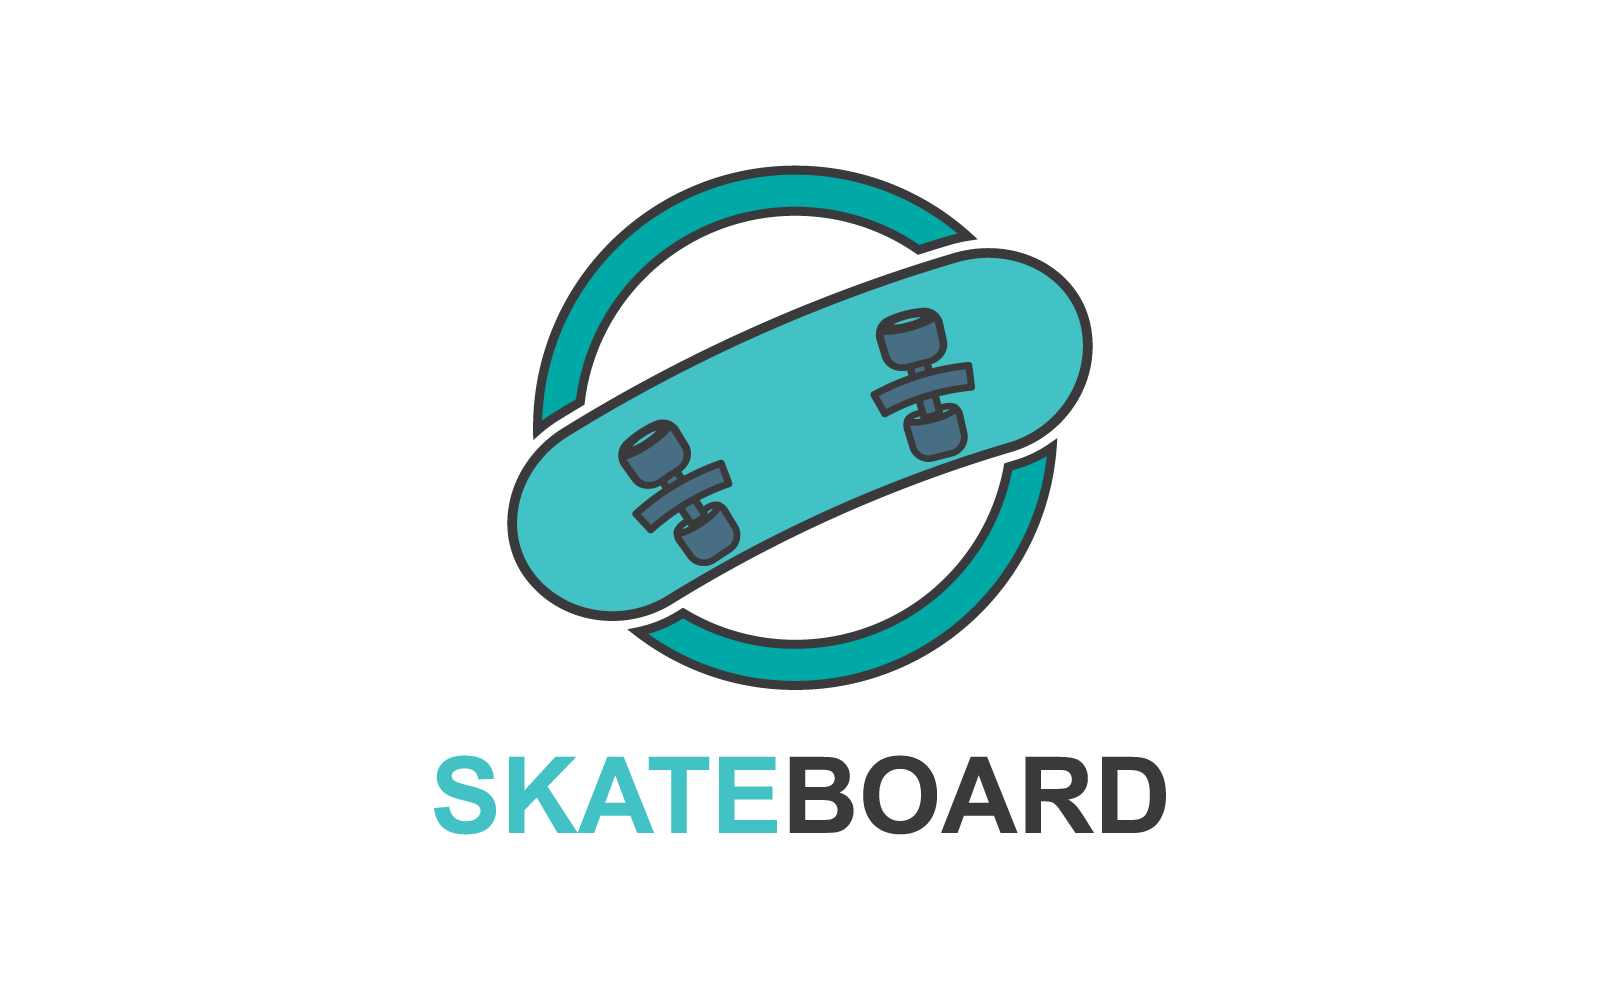 Skateboard logo icon on white background